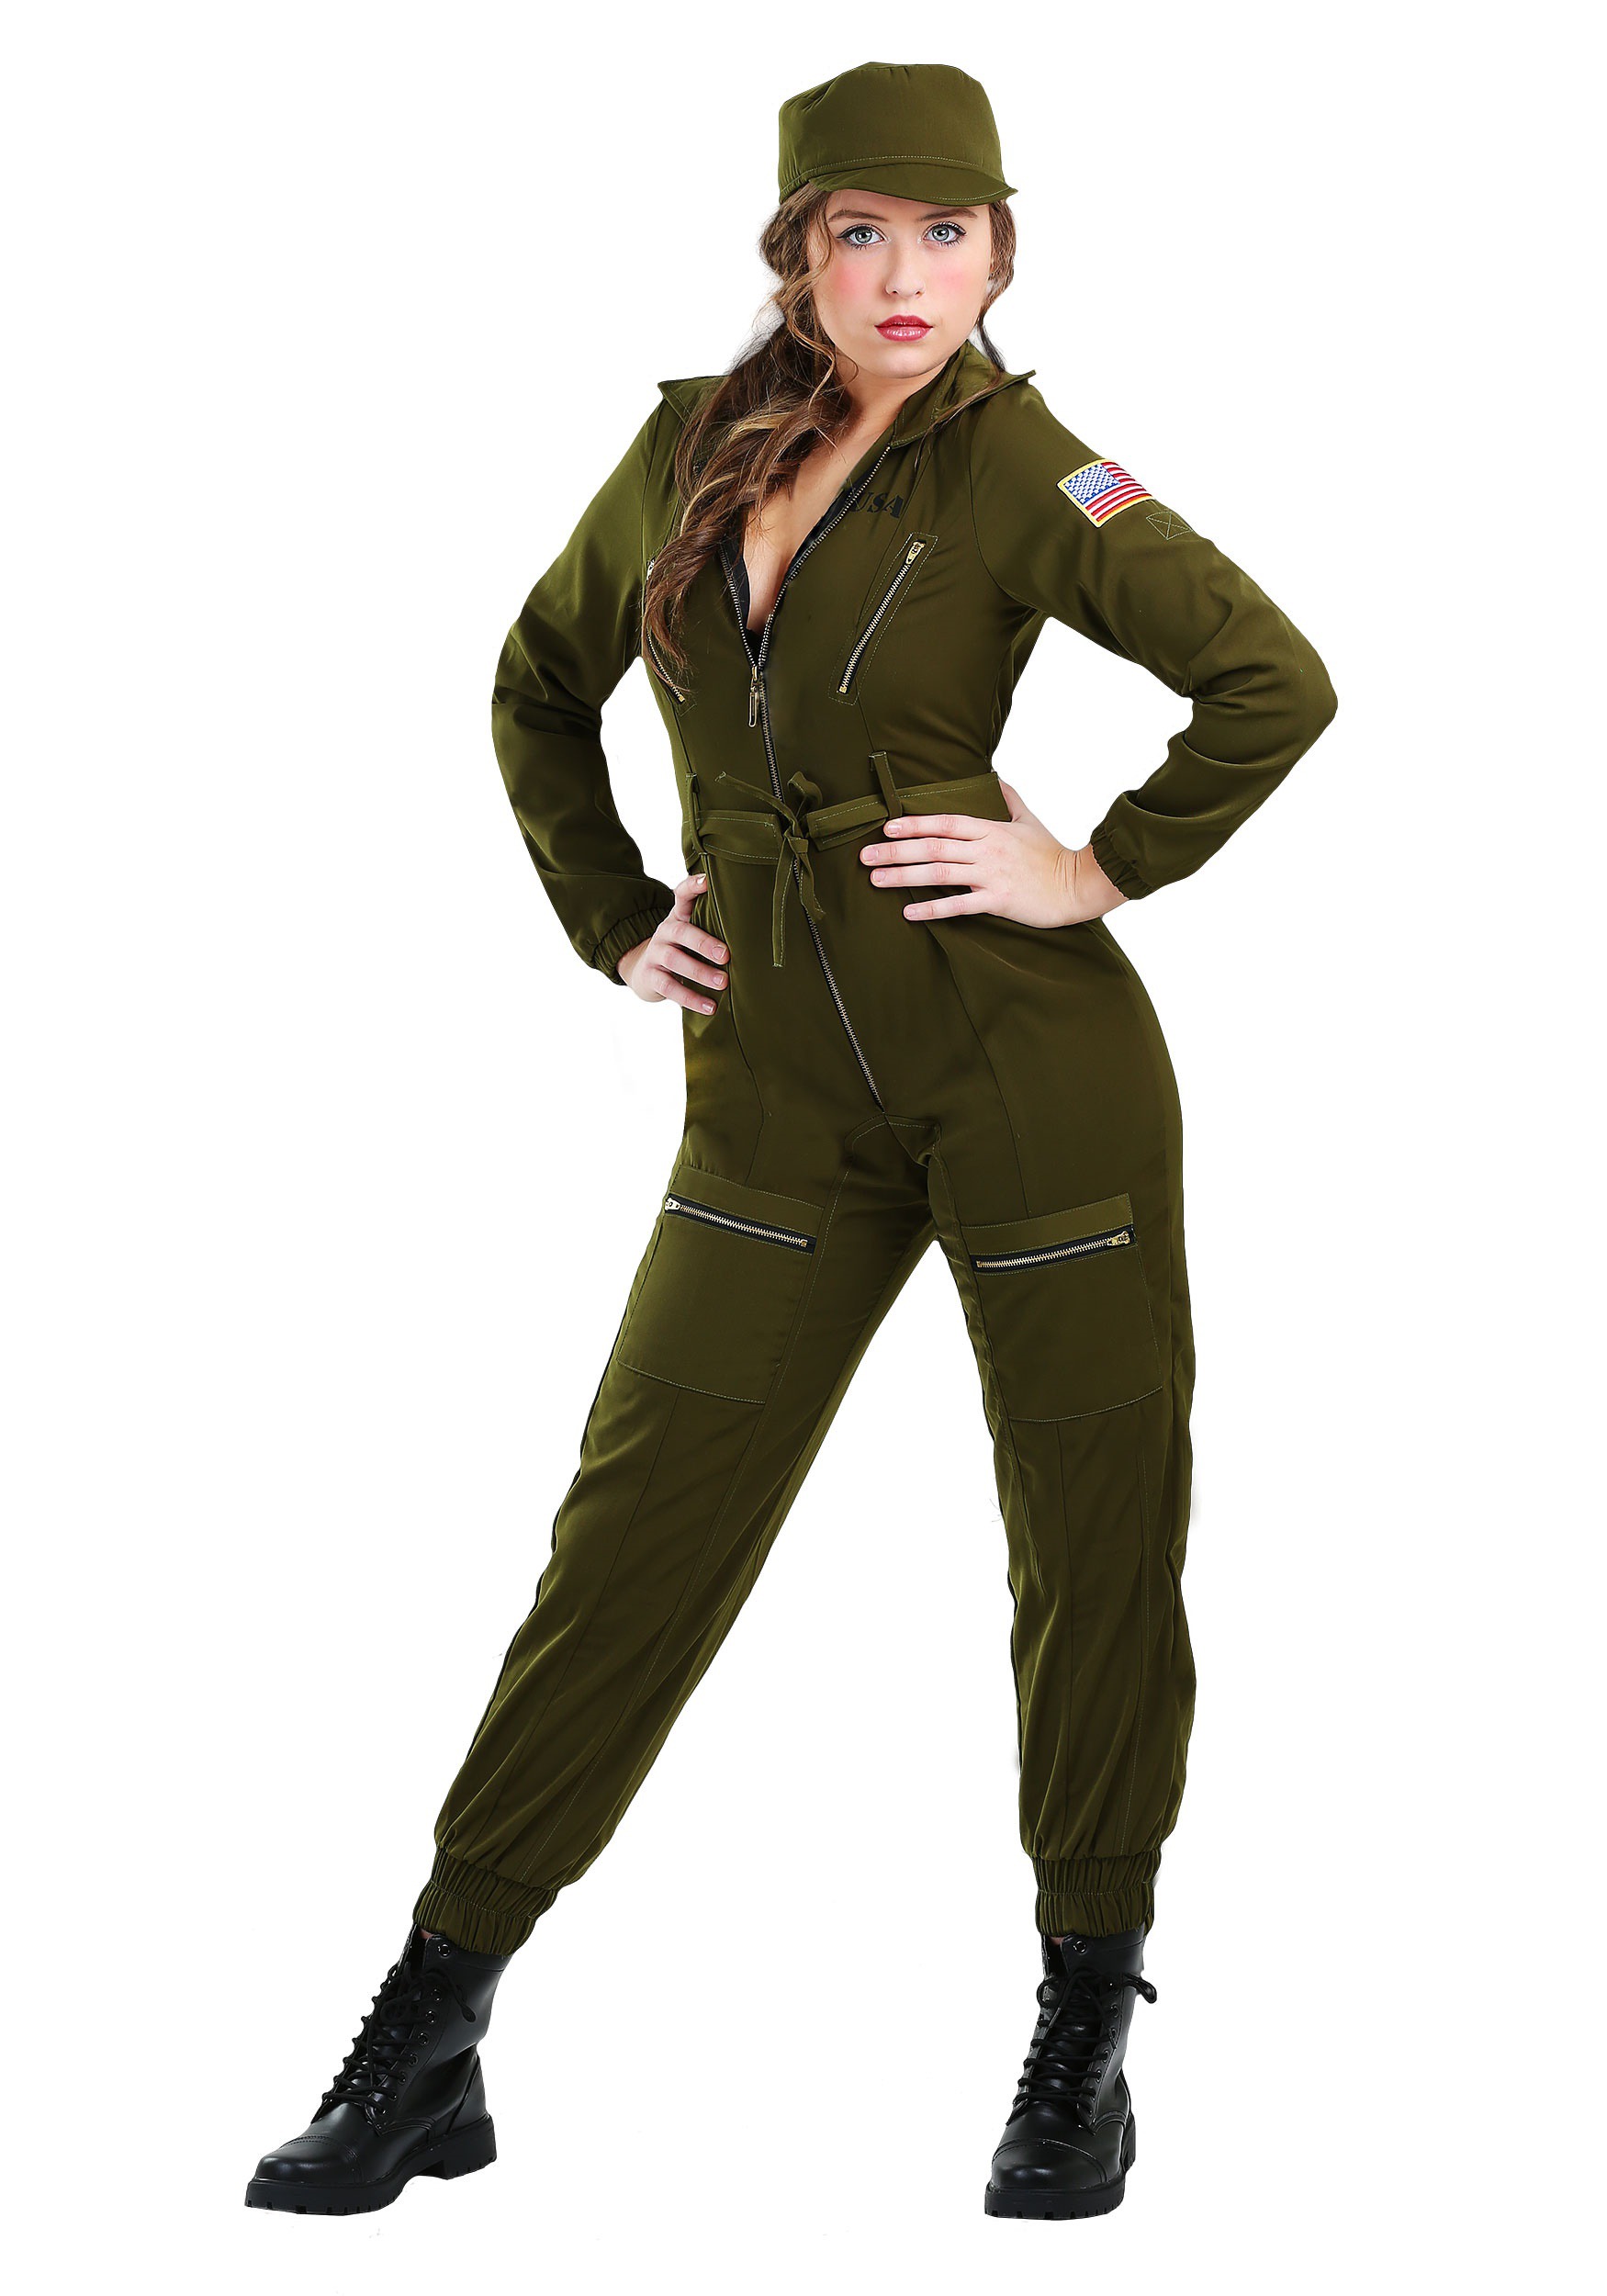 Army Flightsuit Fancy Dress Costume For Women , Army Uniform Fancy Dress Costumes